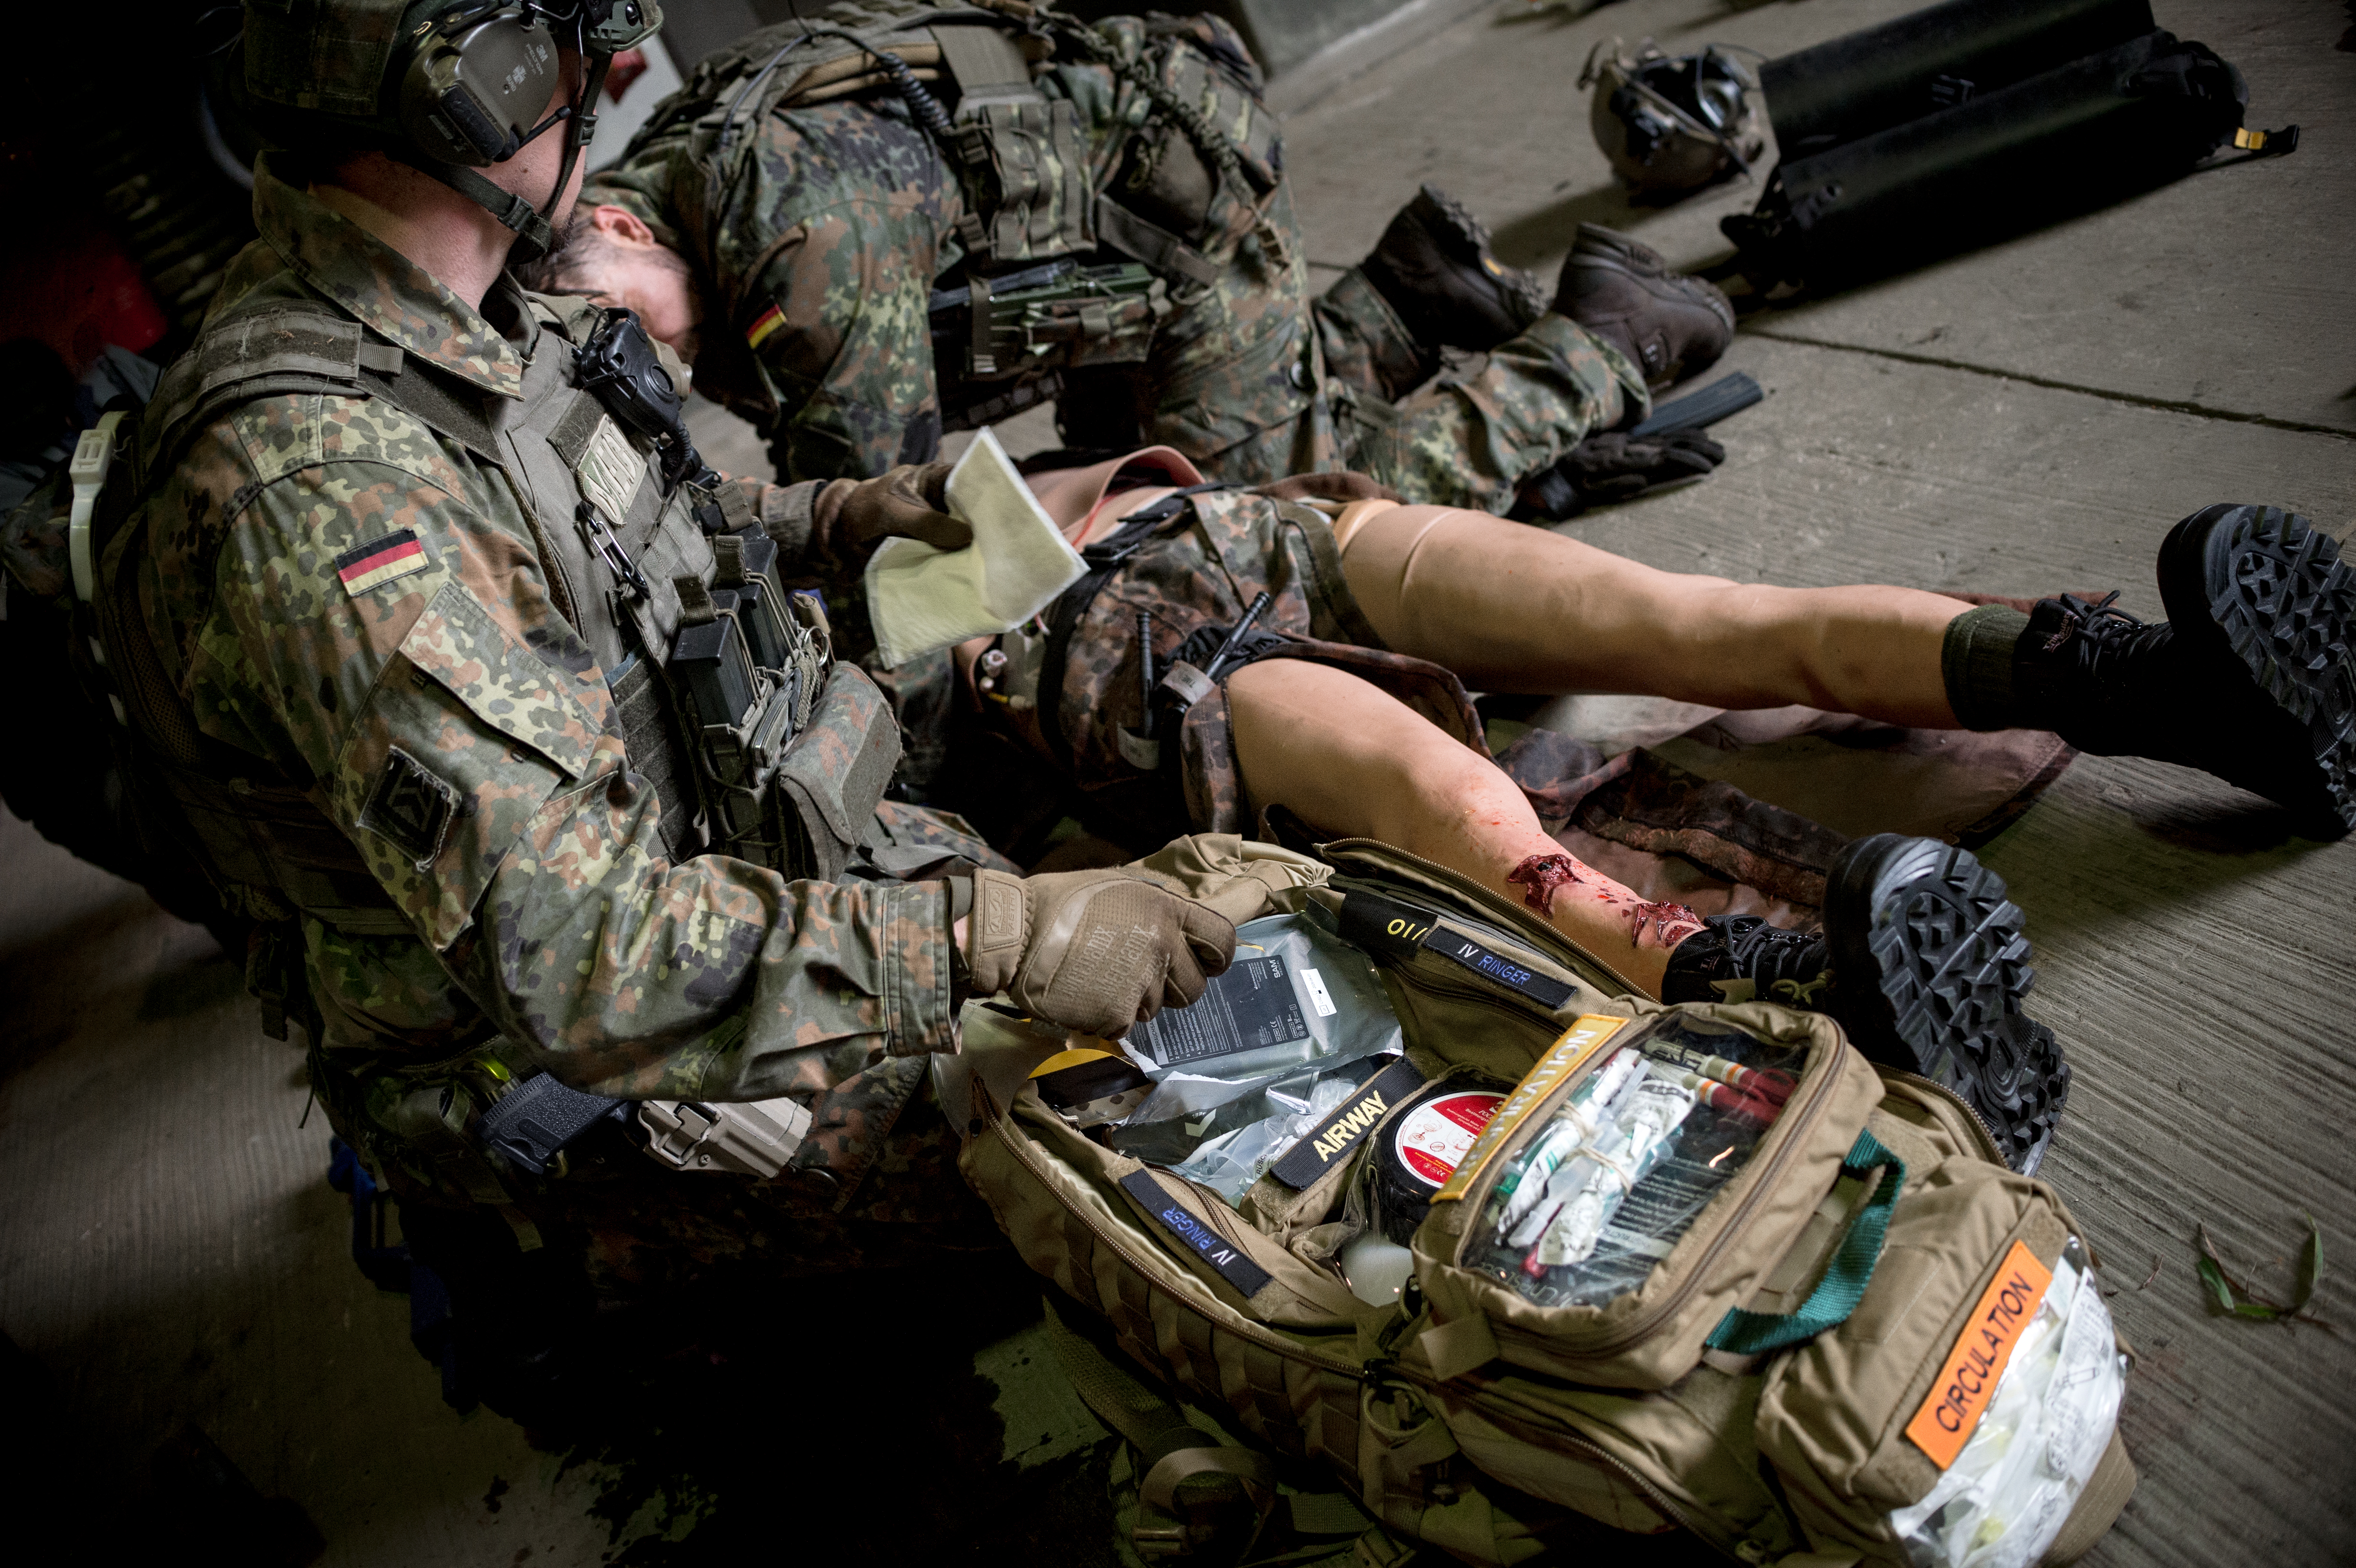 Während der Versorgung eines Verwundeten greift ein Kampfretter Material aus dem Sanitätsrucksack.